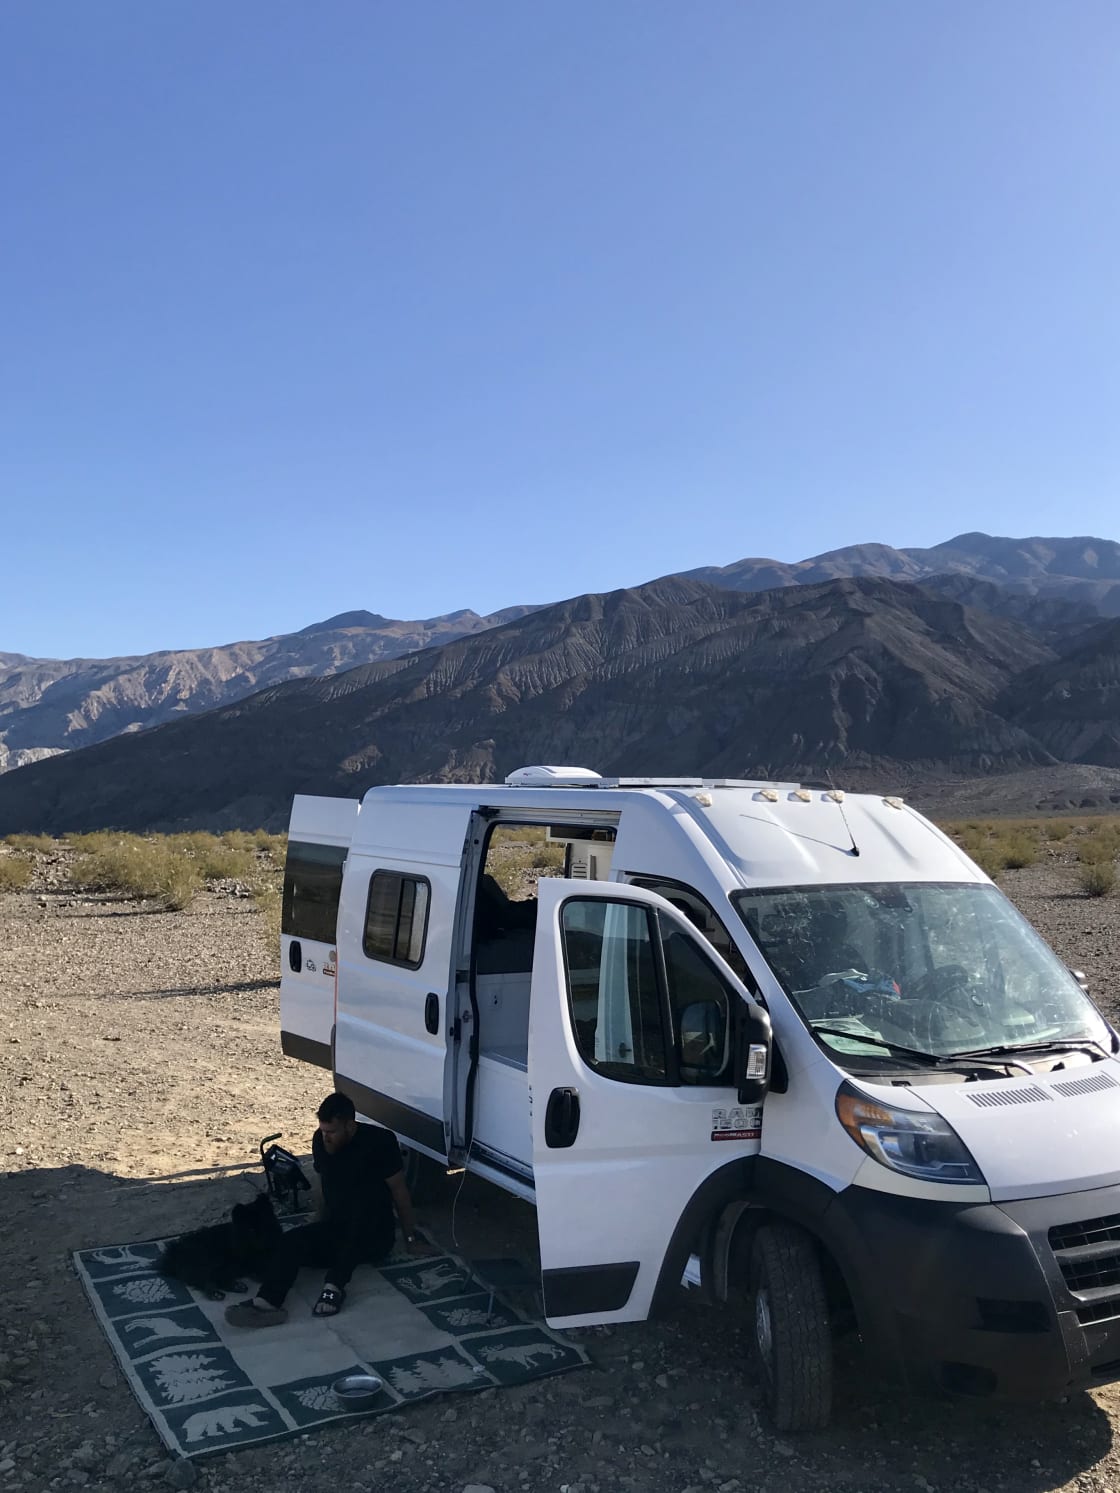 Death Valley Stargazing Camp